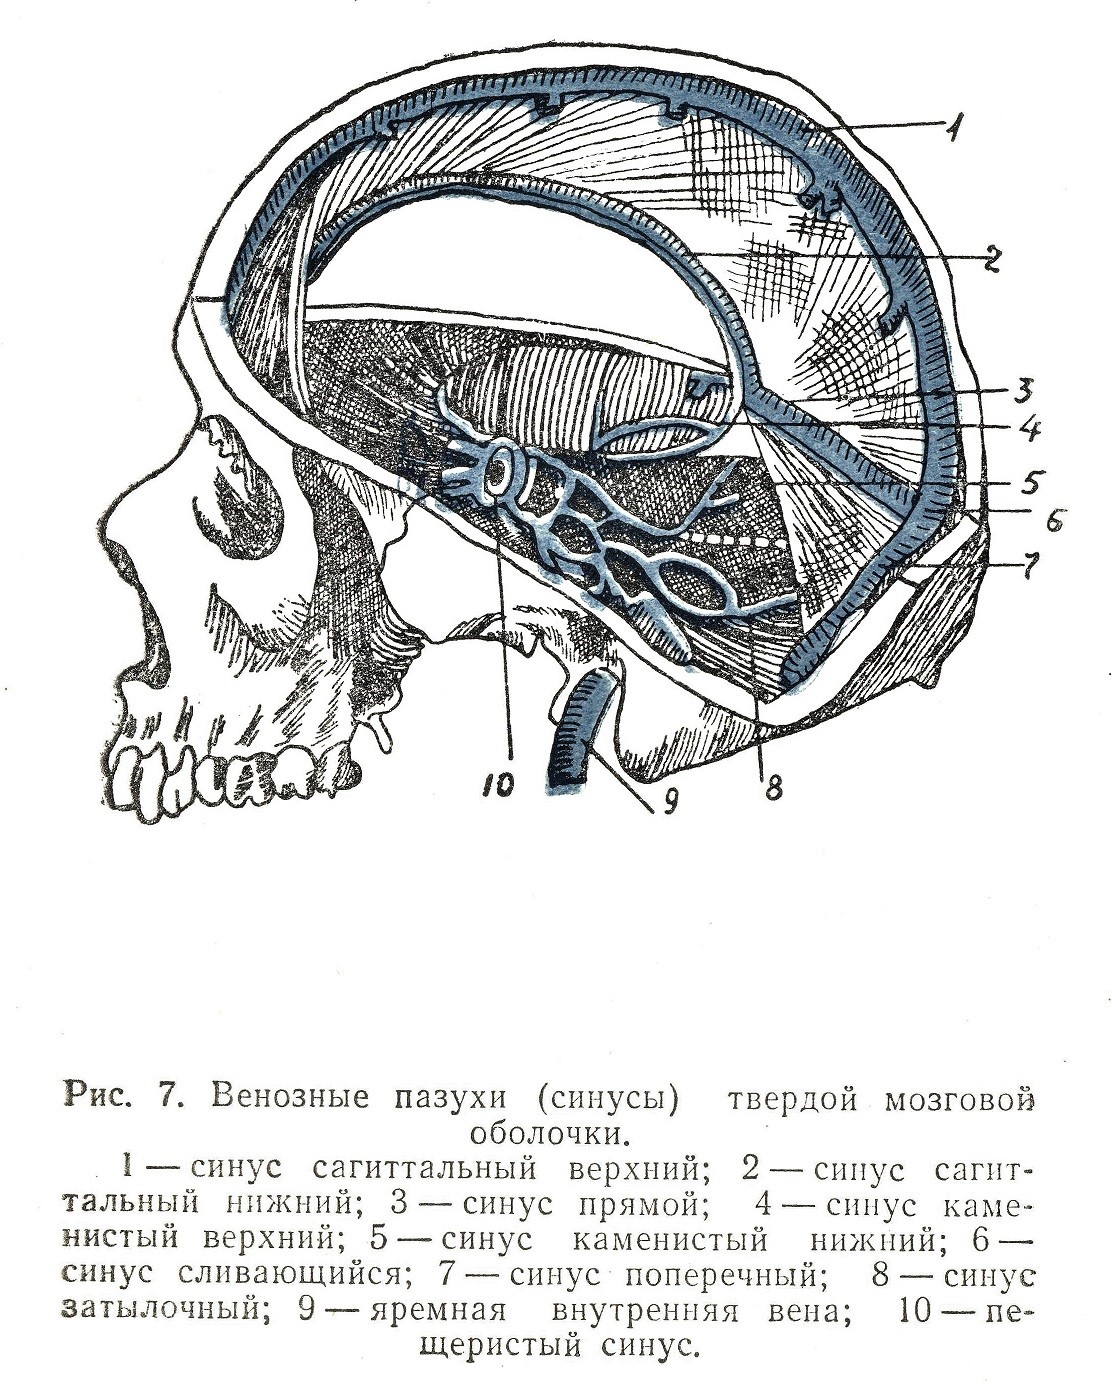 Синусы оболочки головного мозга. Синусы твёрдой мозговой оболочки анатомия. Синусы твердой мозговой оболочки на черепе. Синусы твердой мозговой оболочки схема. Сигмовидный синус твердой мозговой оболочки.